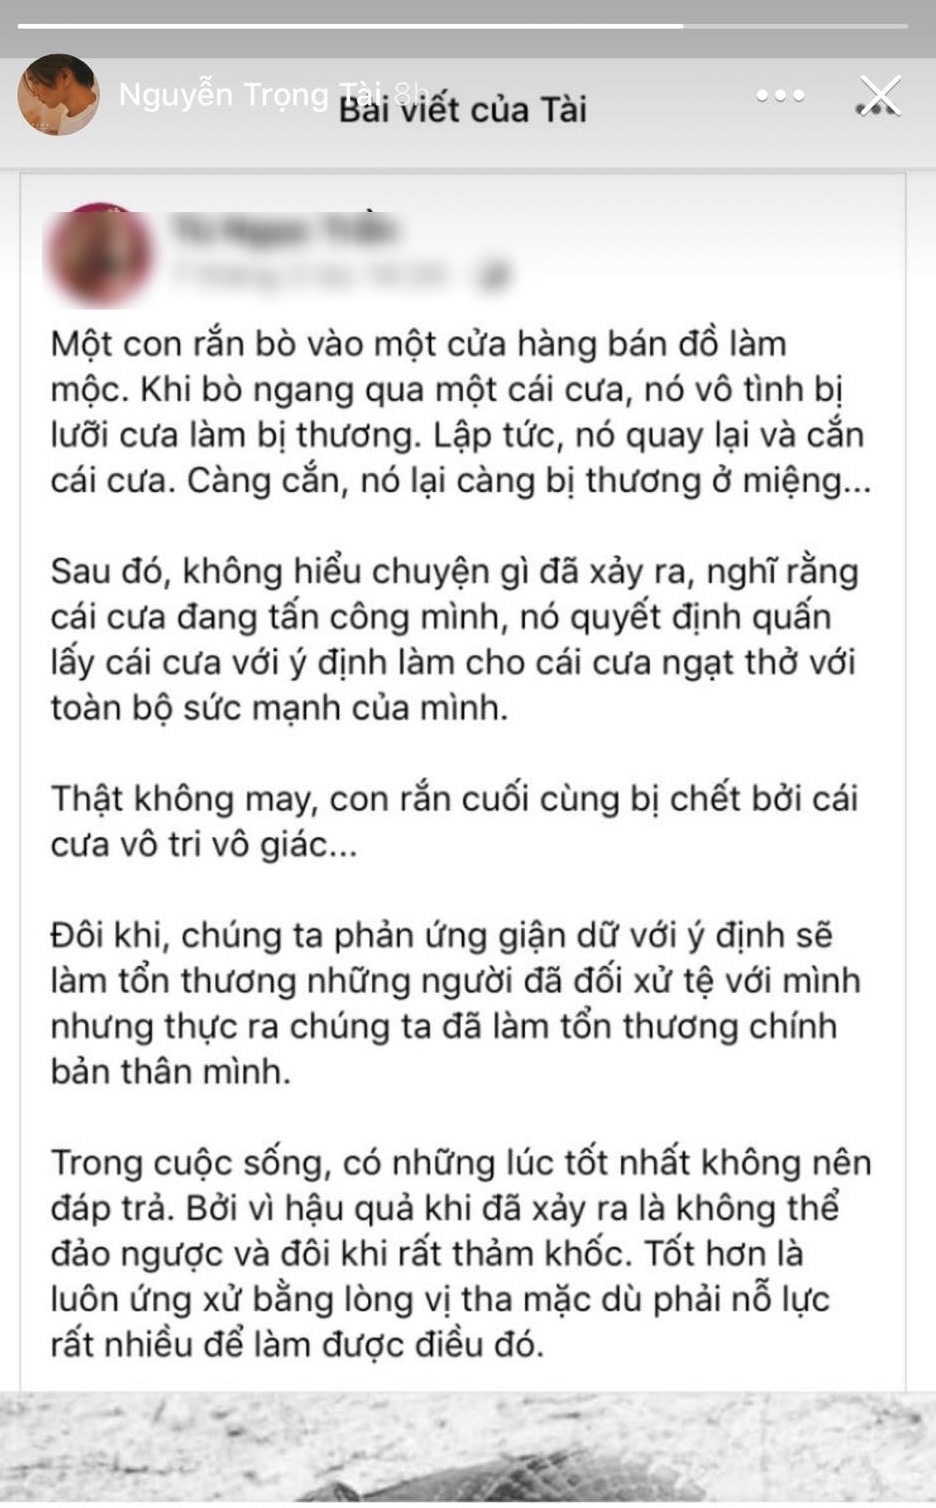  
Nguyễn Trọng Tài kể về câu chuyện sự vị tha.